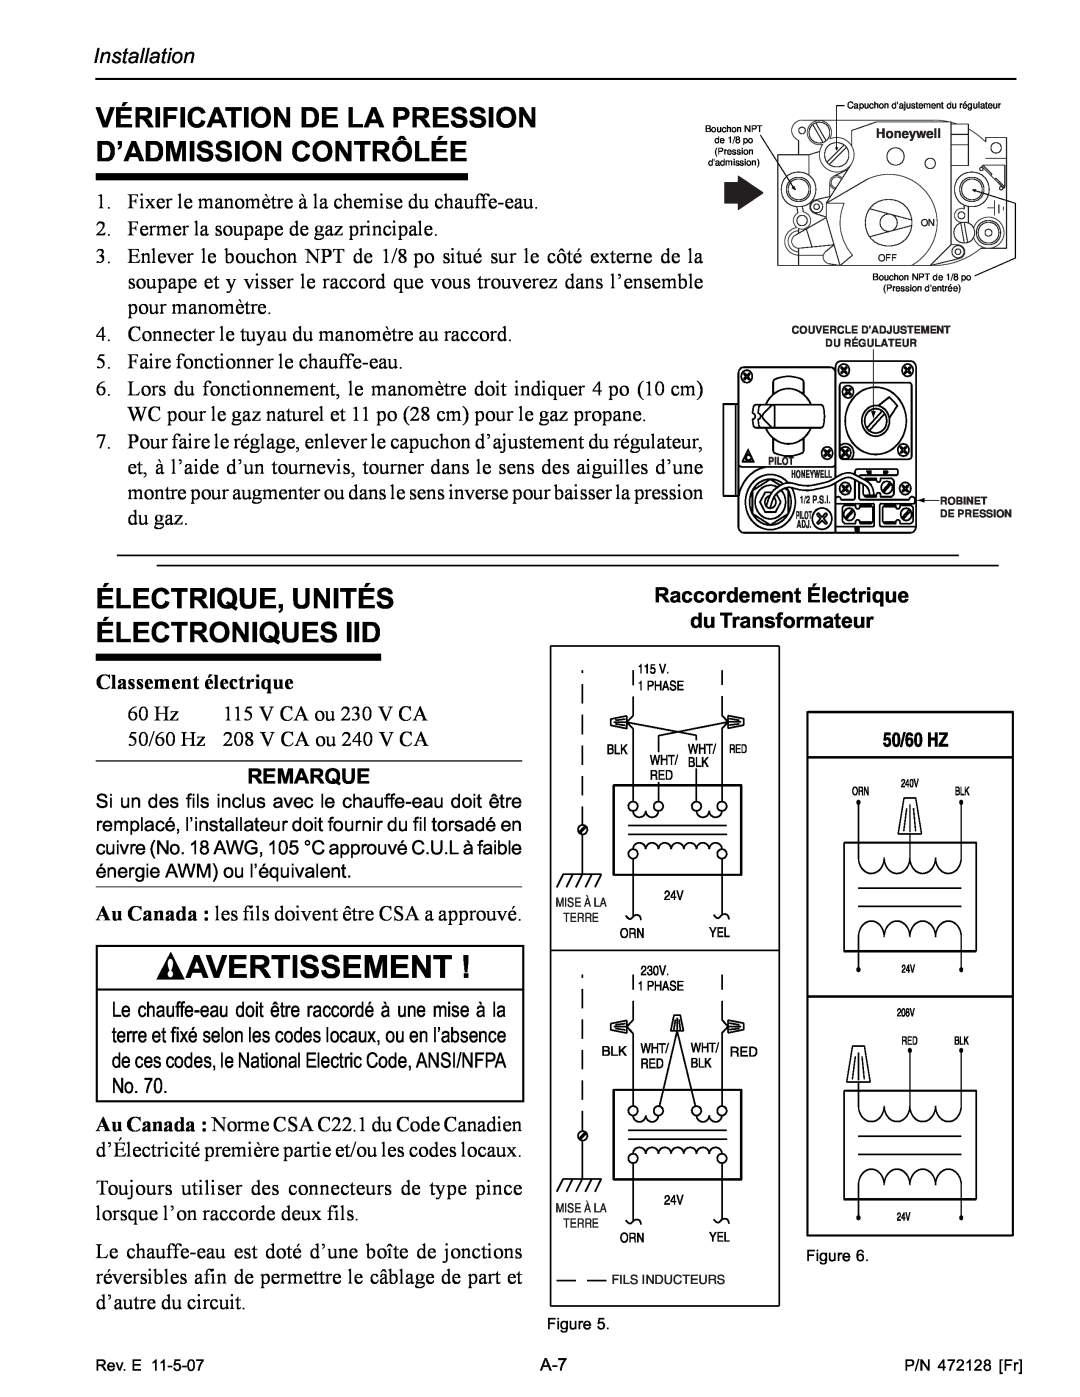 Pentair Hot Tub Vérification De La Pression D’Admission Contrôlée, Électrique, Unités Électroniques Iid, Avertissement 